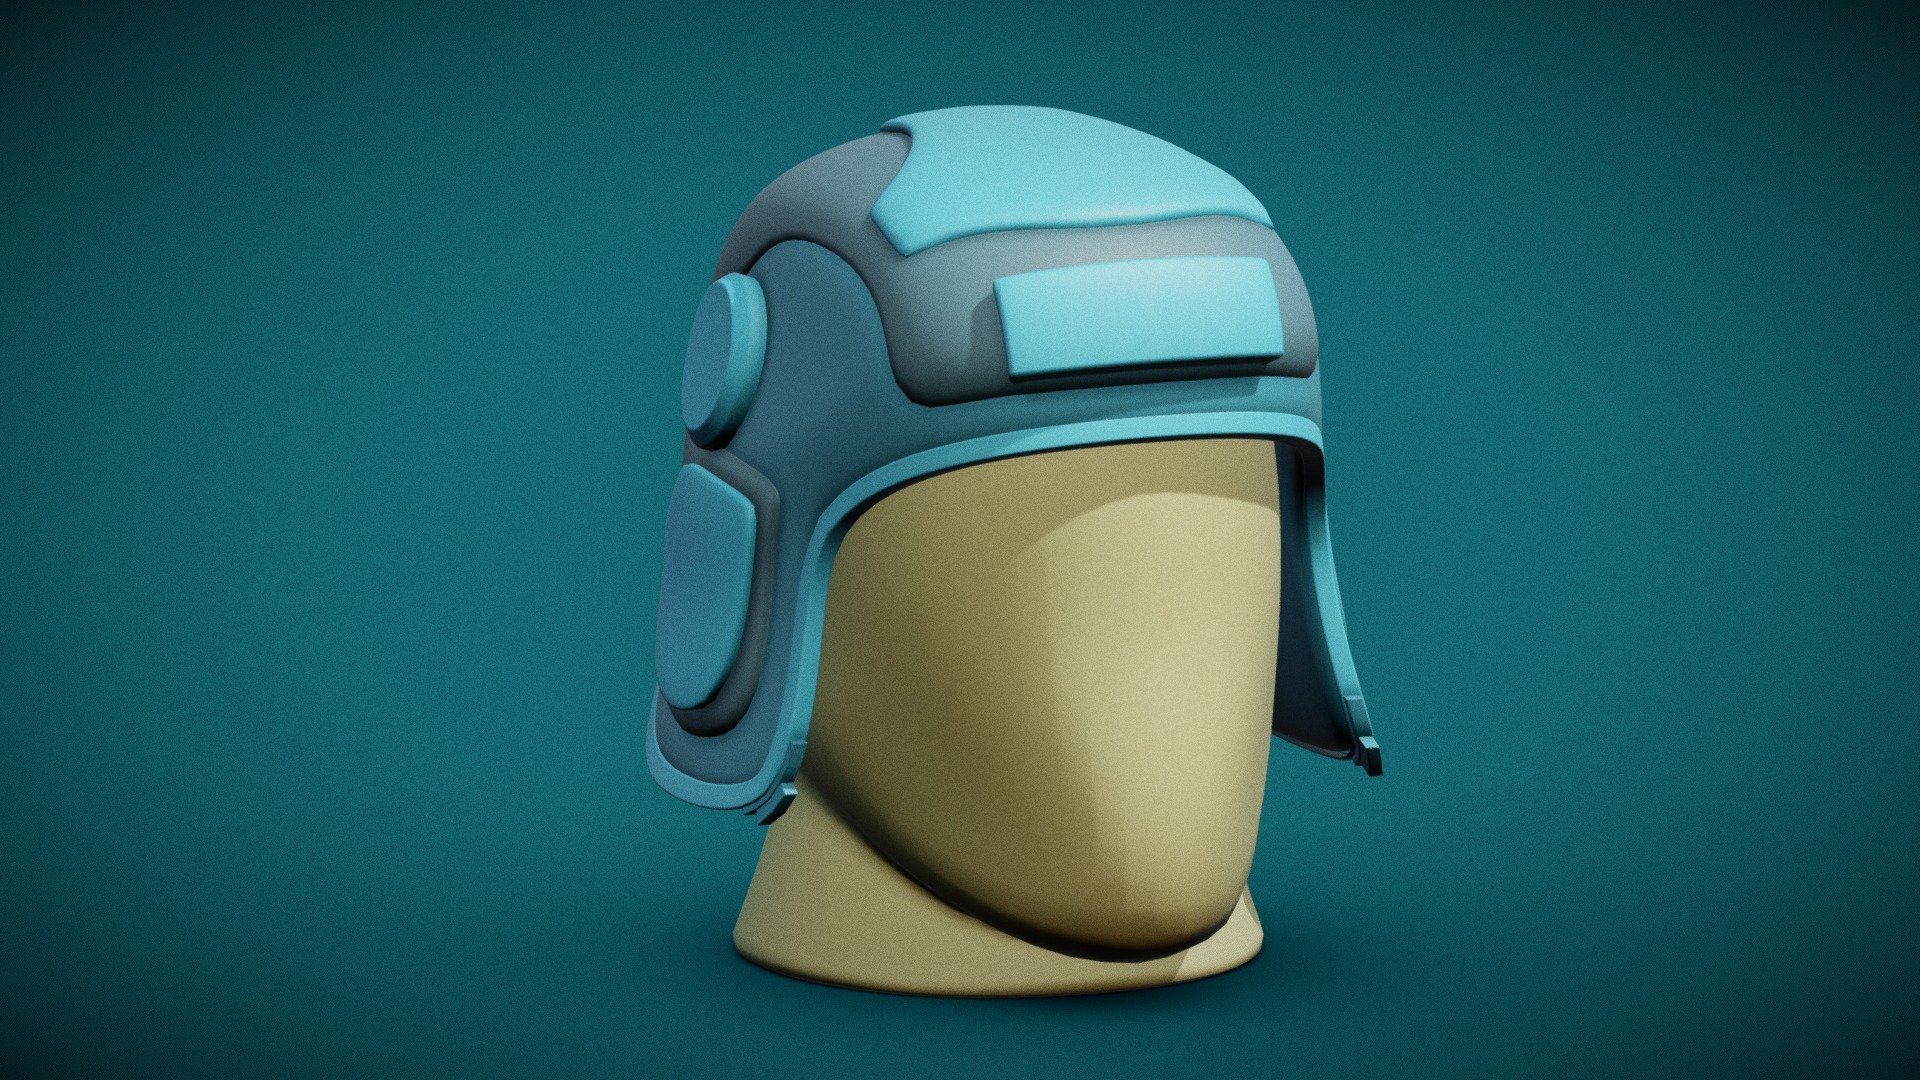 Stylized Cartoon Helmet (base) - Stylized Cartoon Helmet (base) - 3D model by 3DWorkbench 3d model